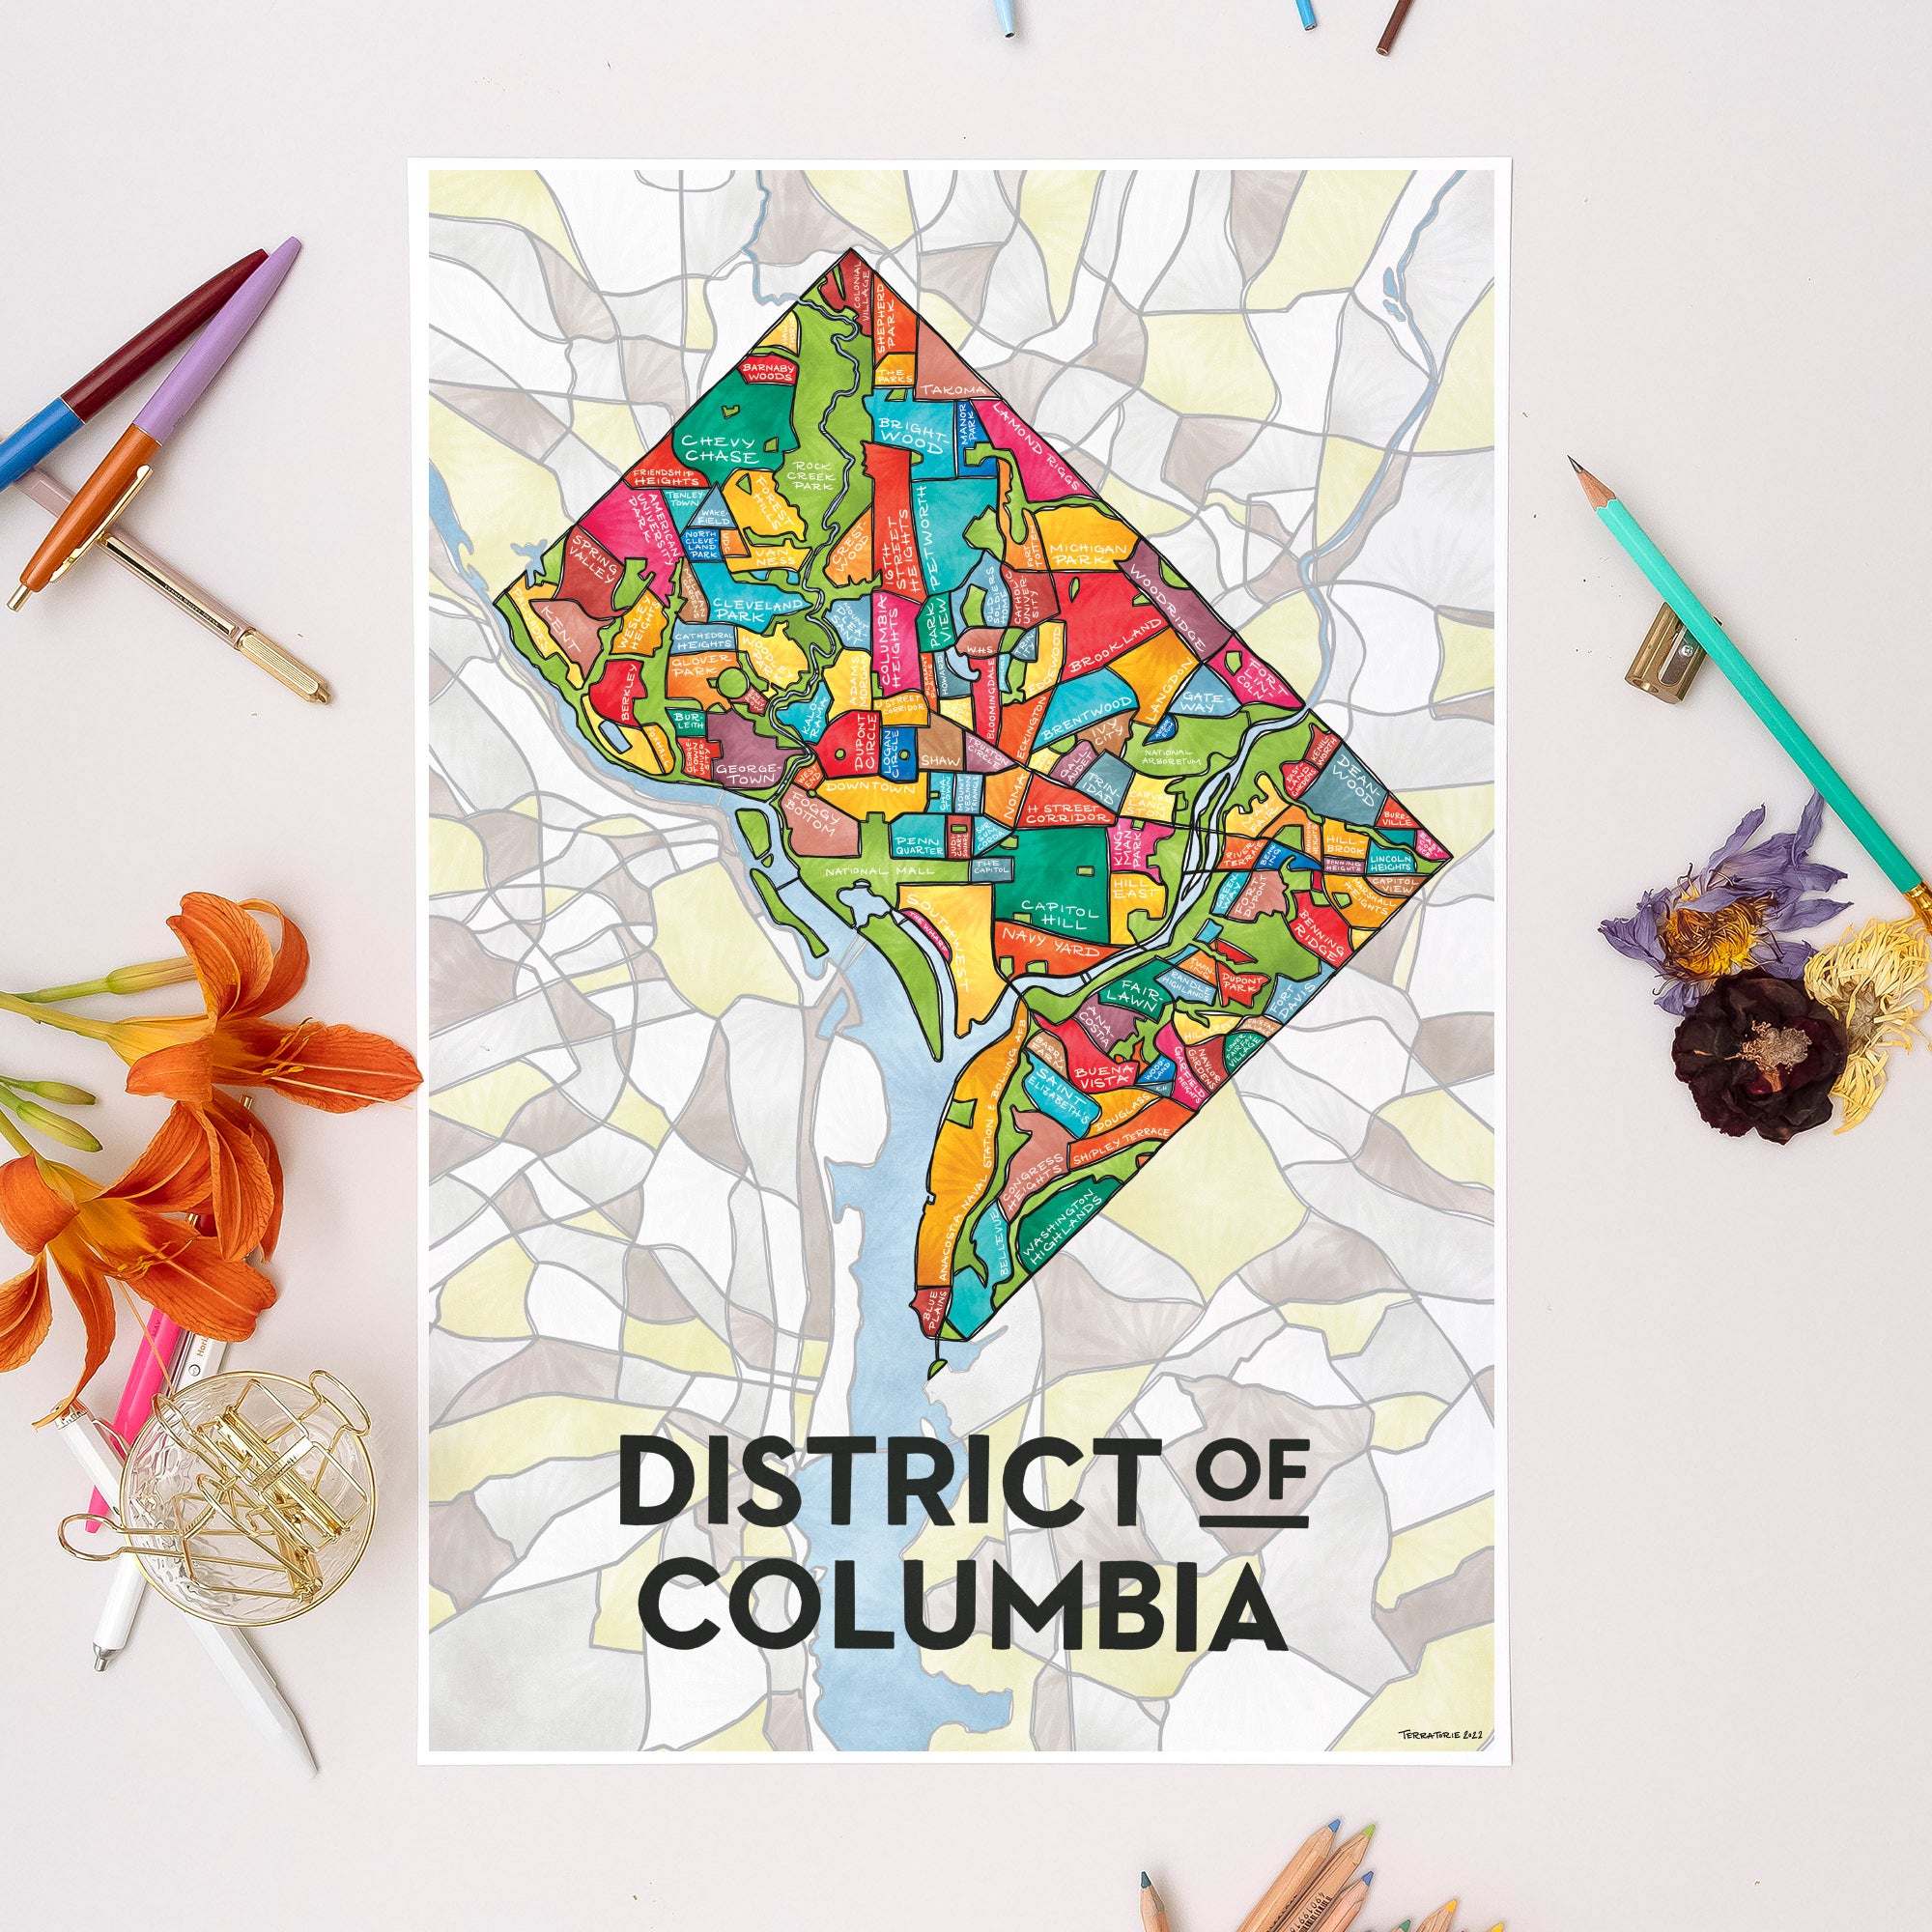 District of Columbia (Washington DC) Neighborhoods Print